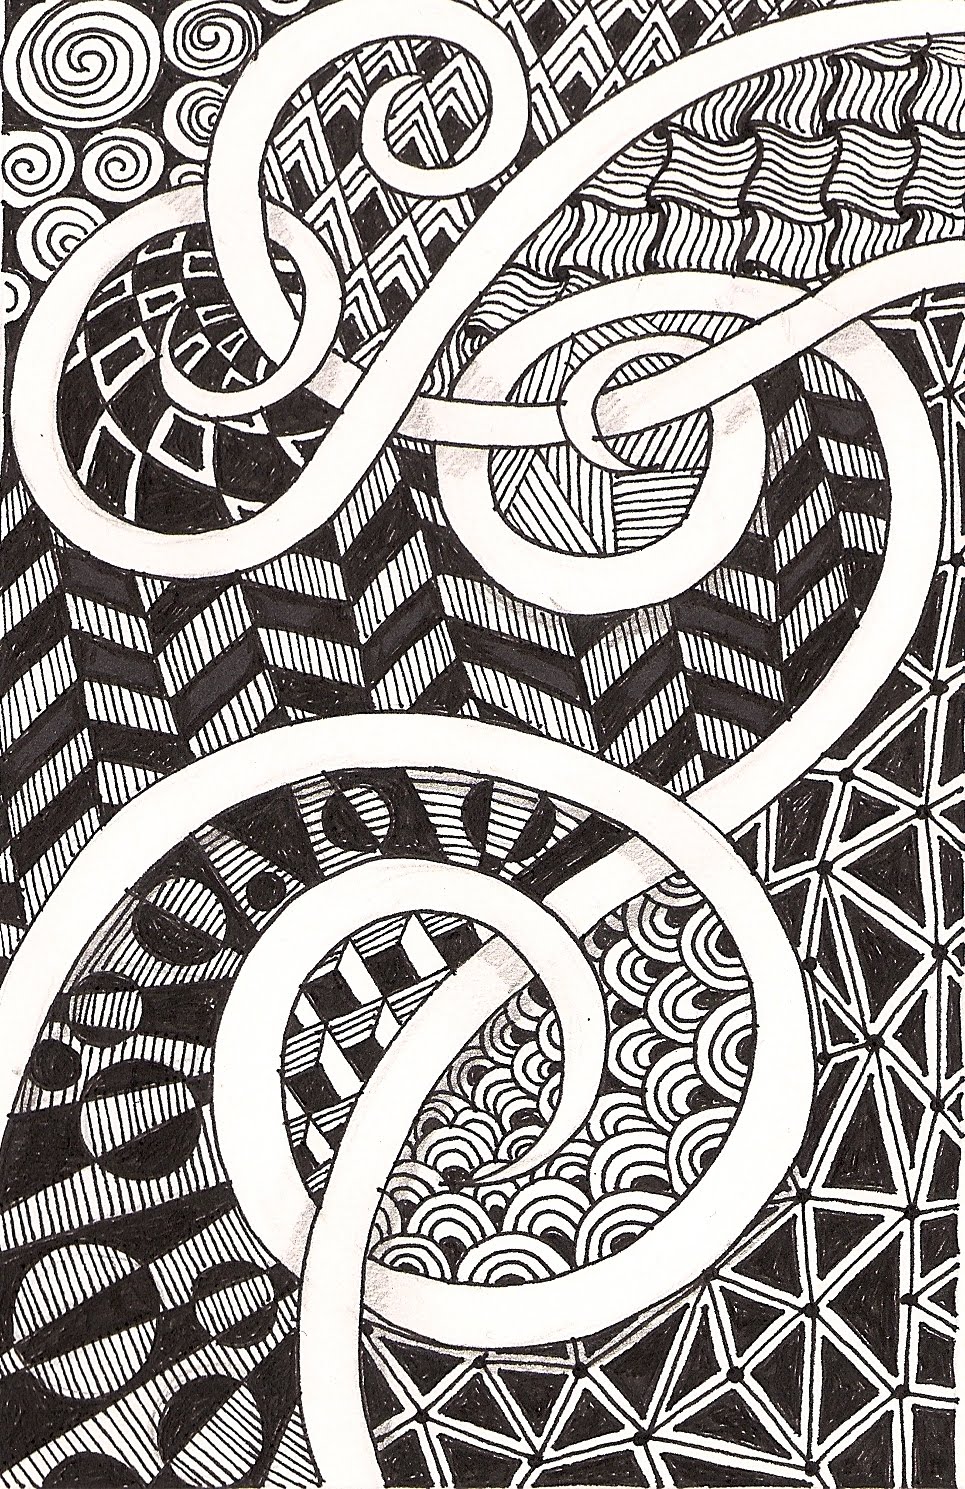 Banar Designs: More zentangles